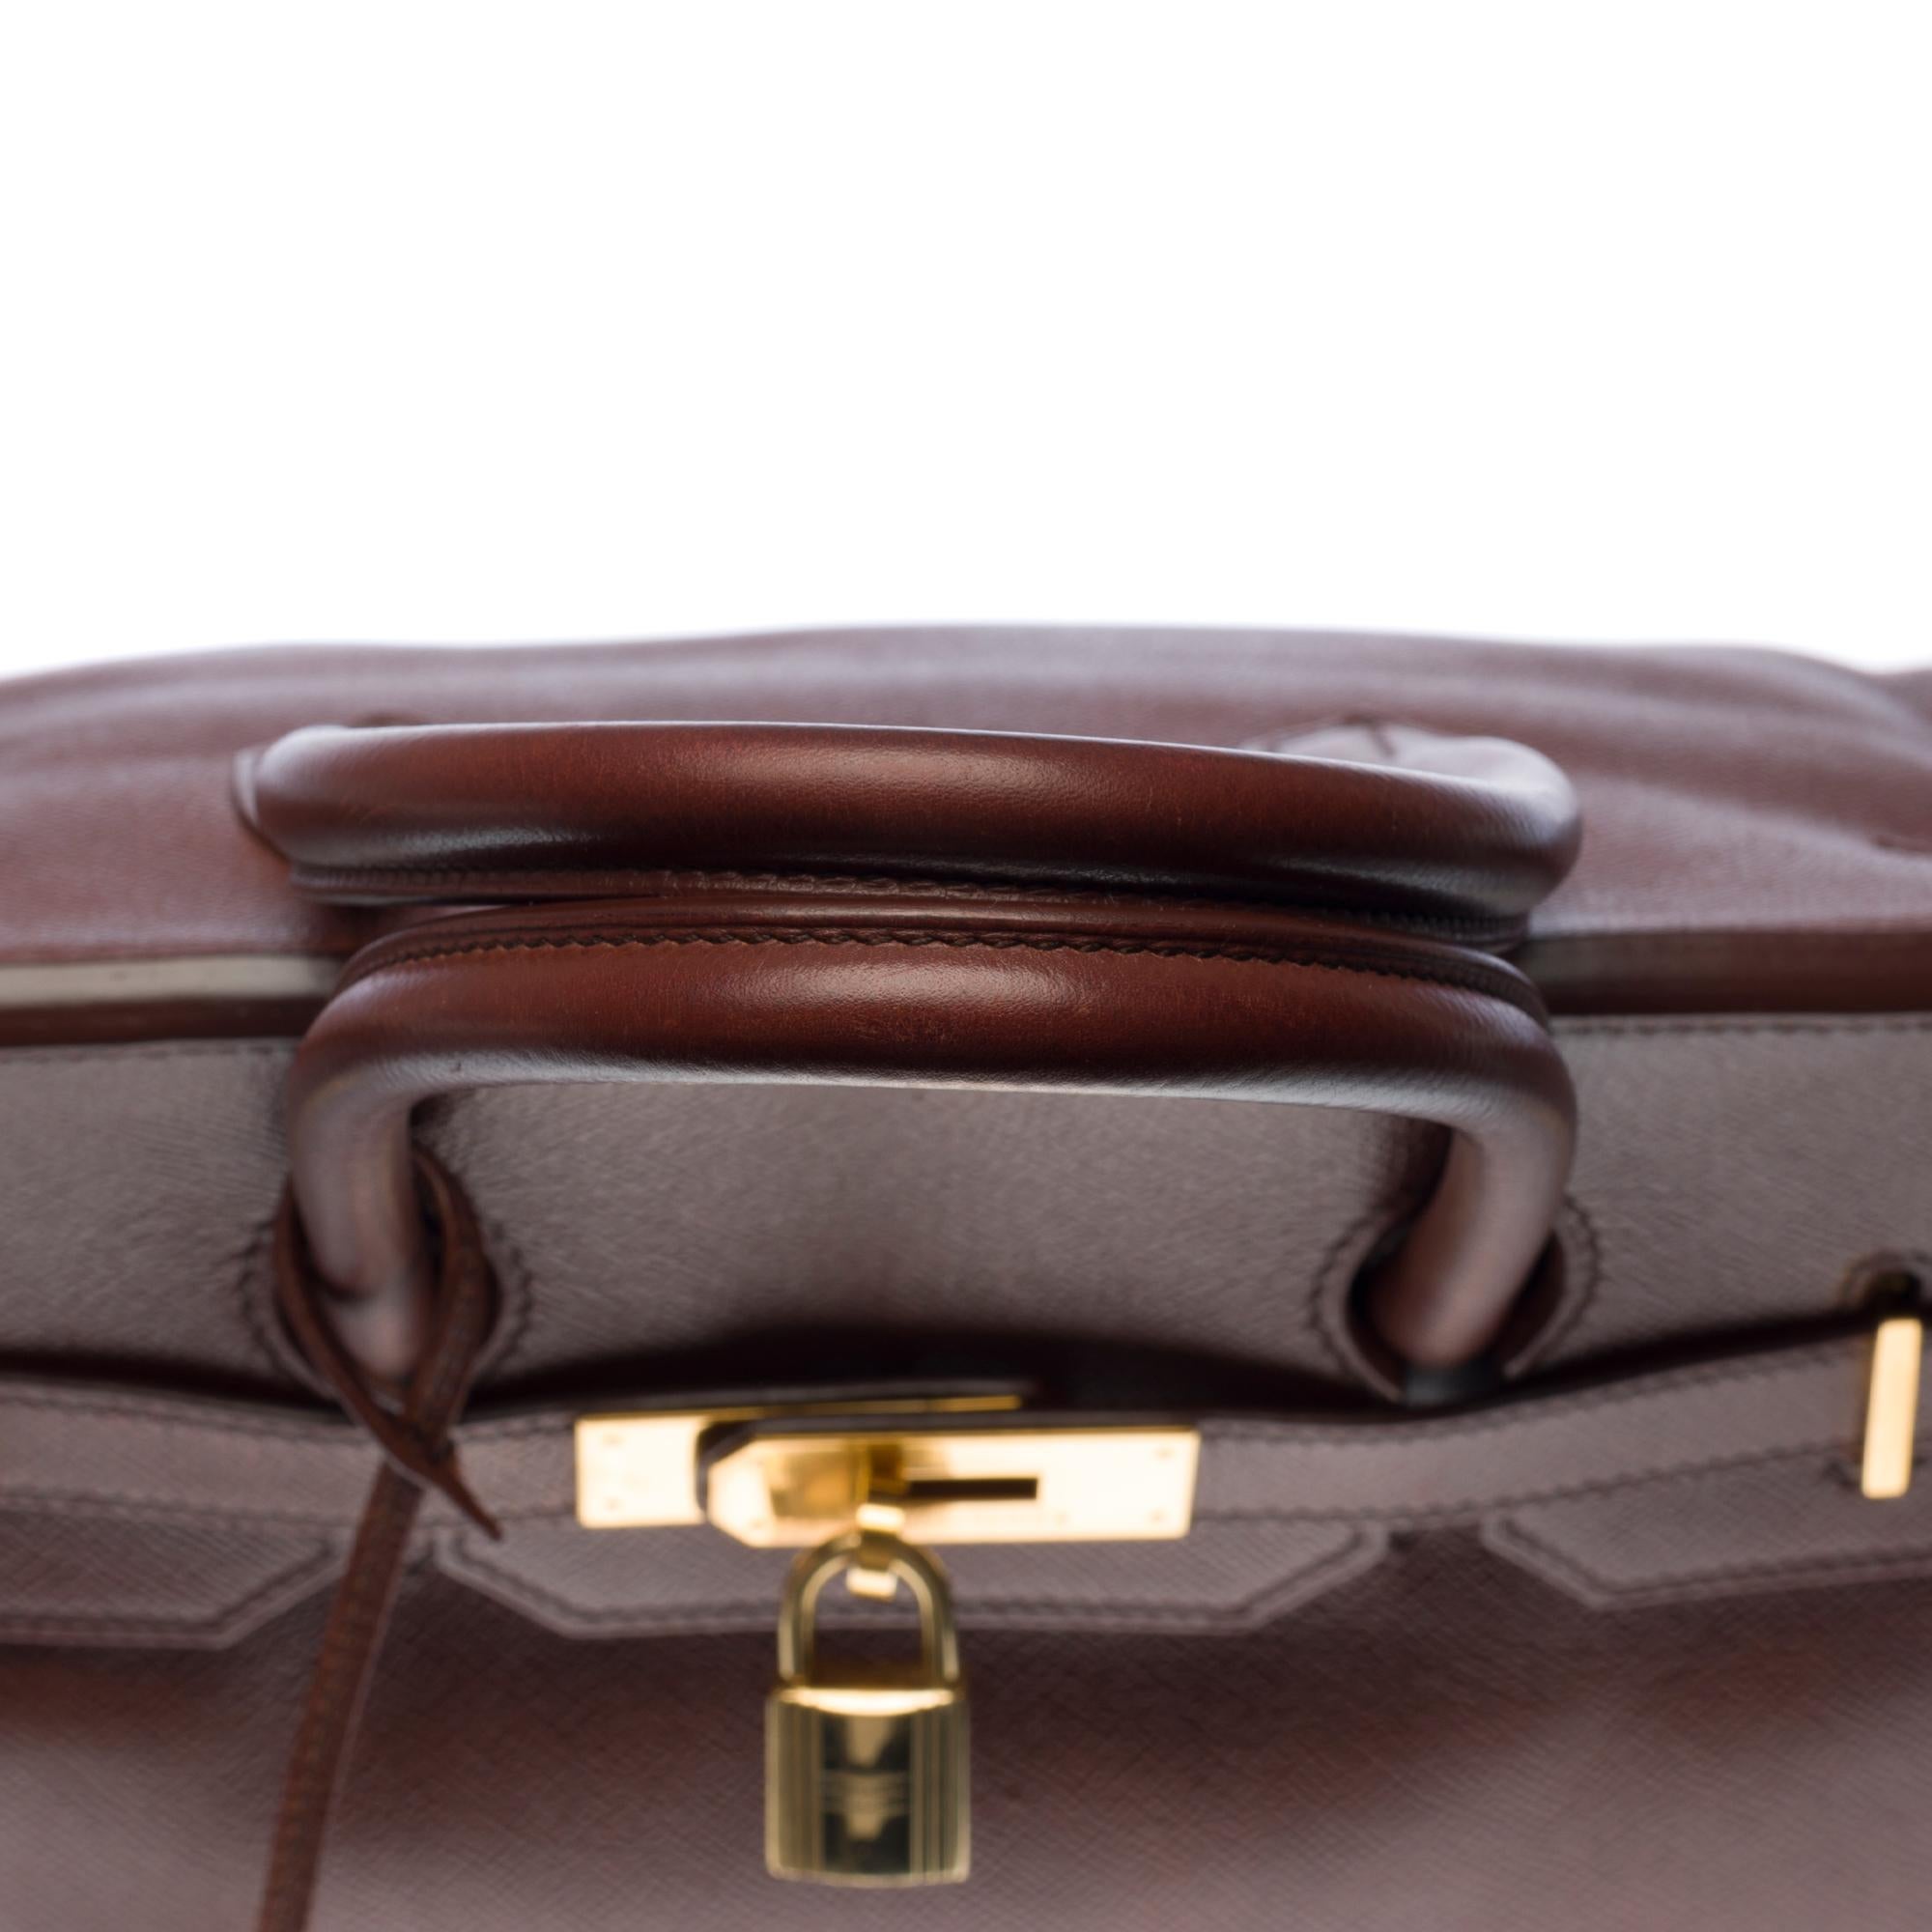 Hermès Birkin 35 handbag in brown Courchevel leather with gold hardware ! 1